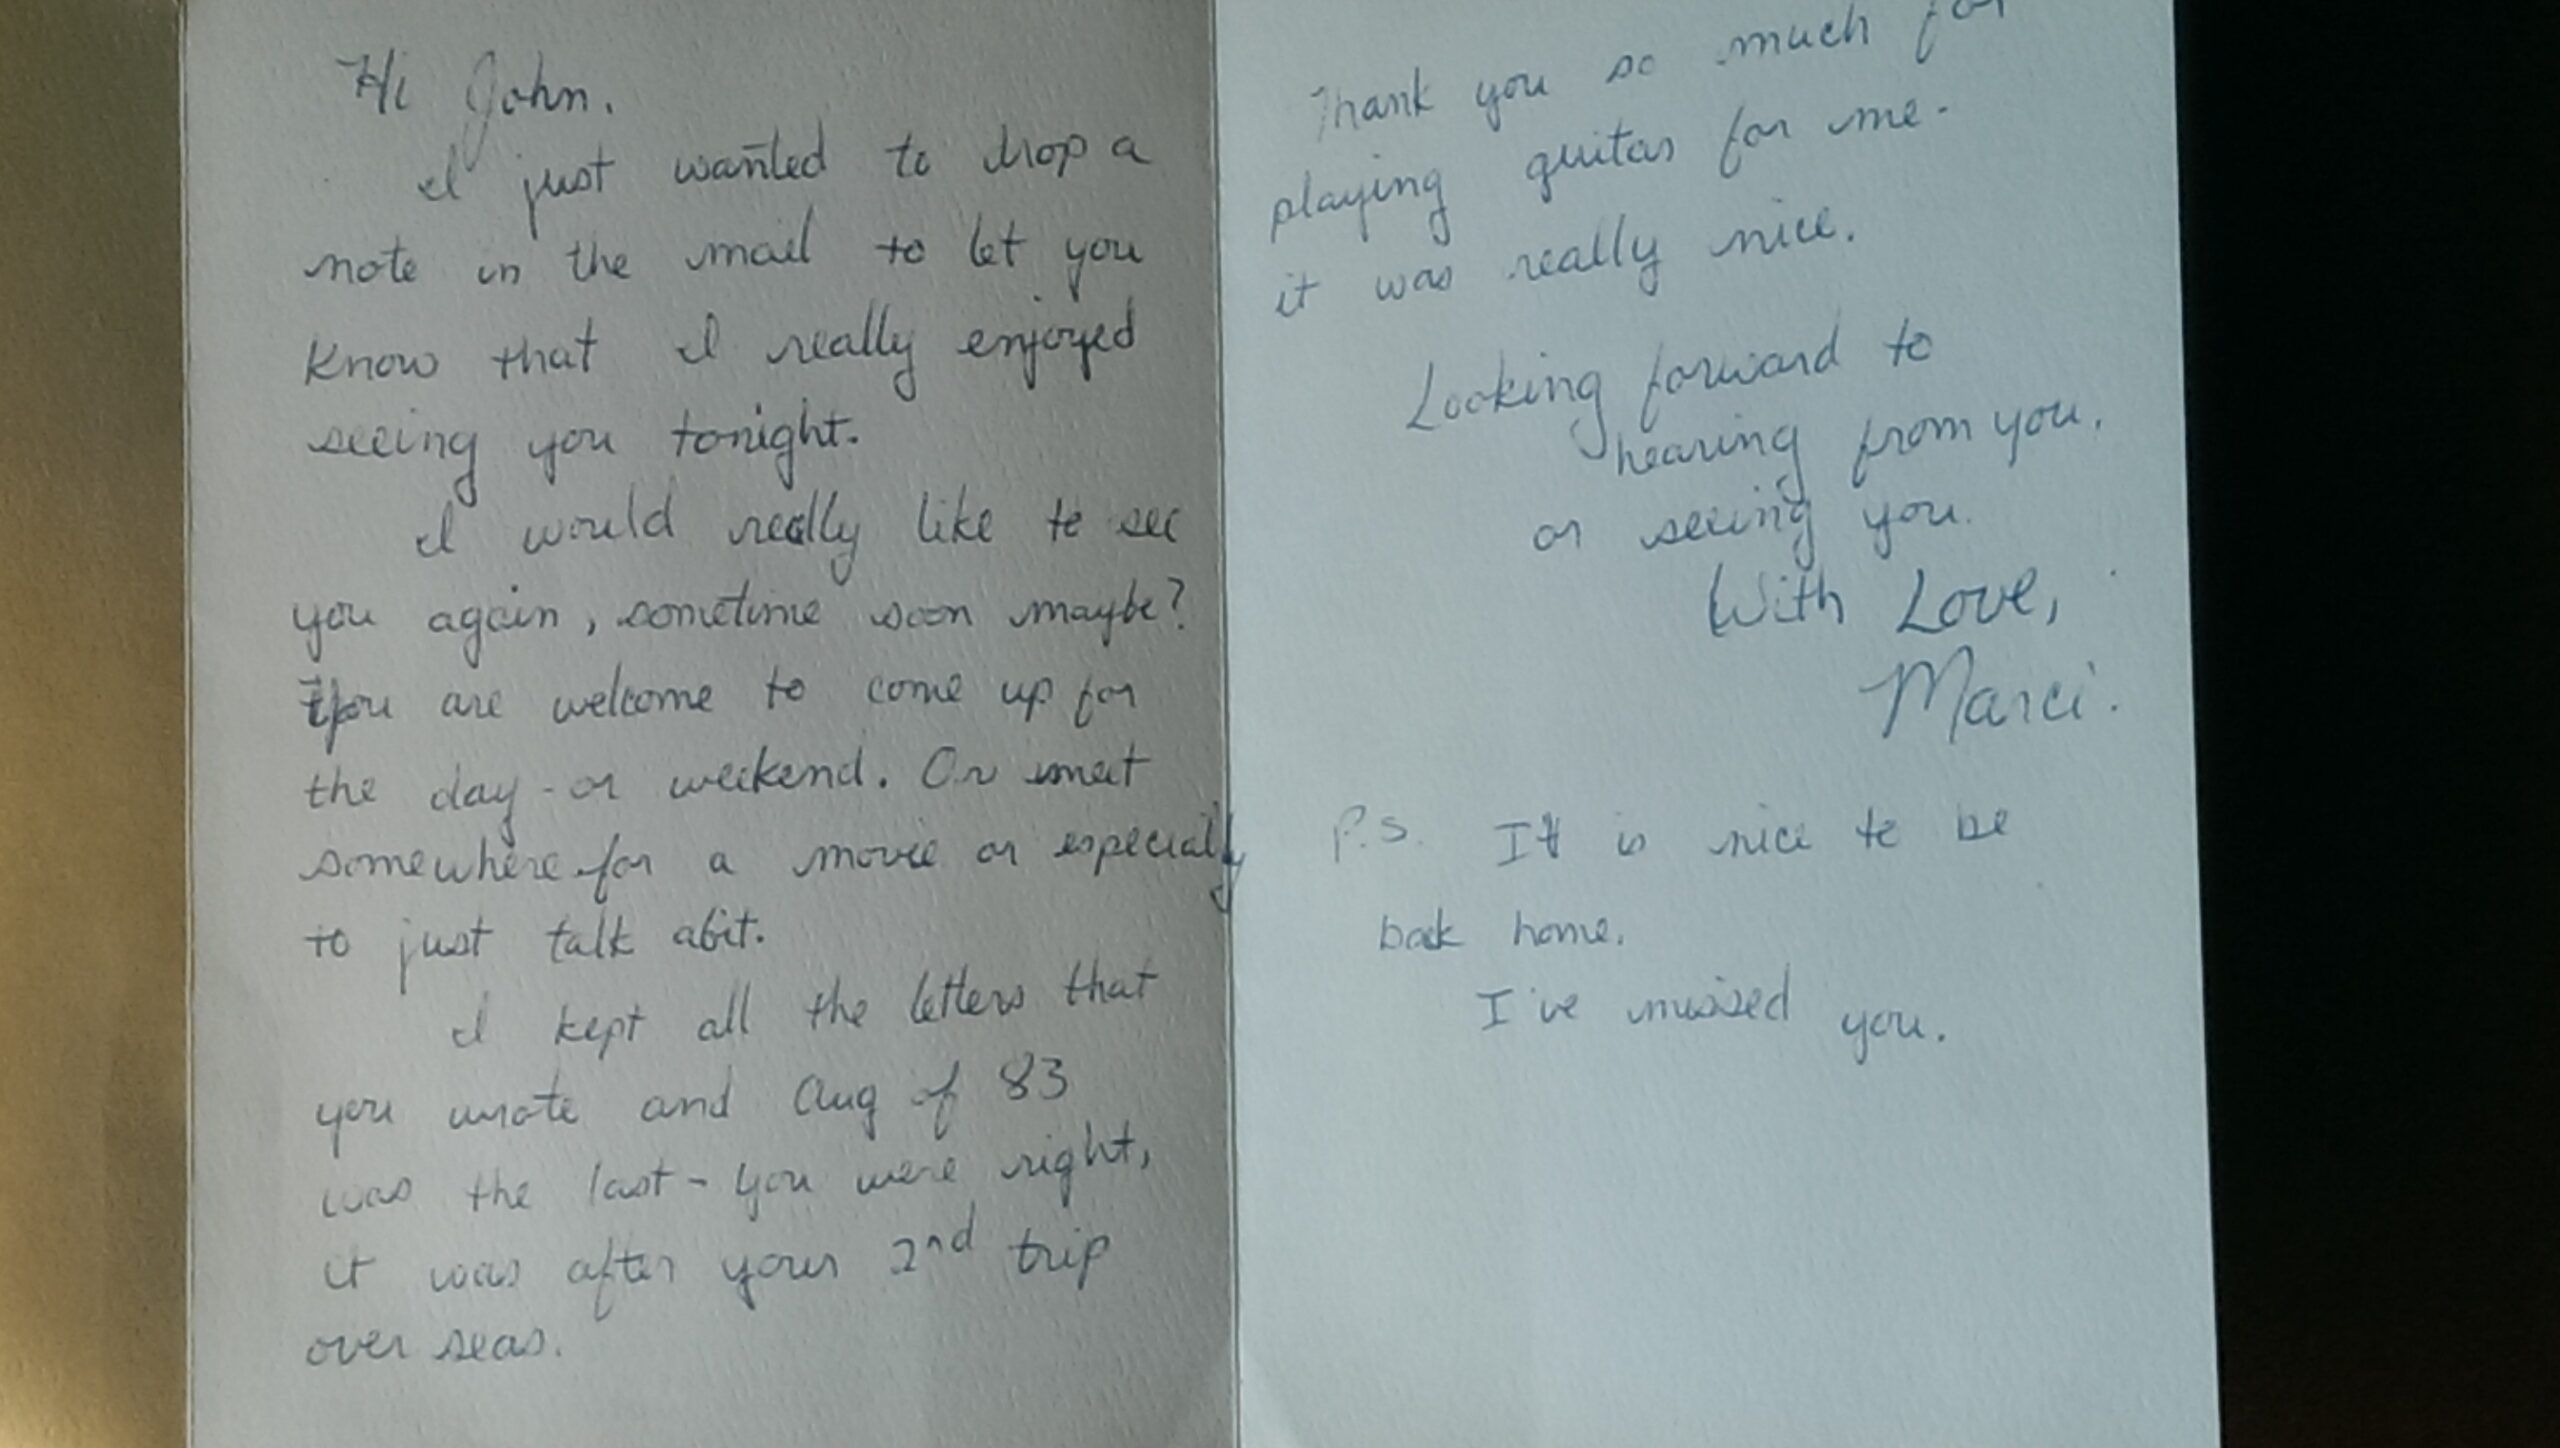 Marci's love letter to John 